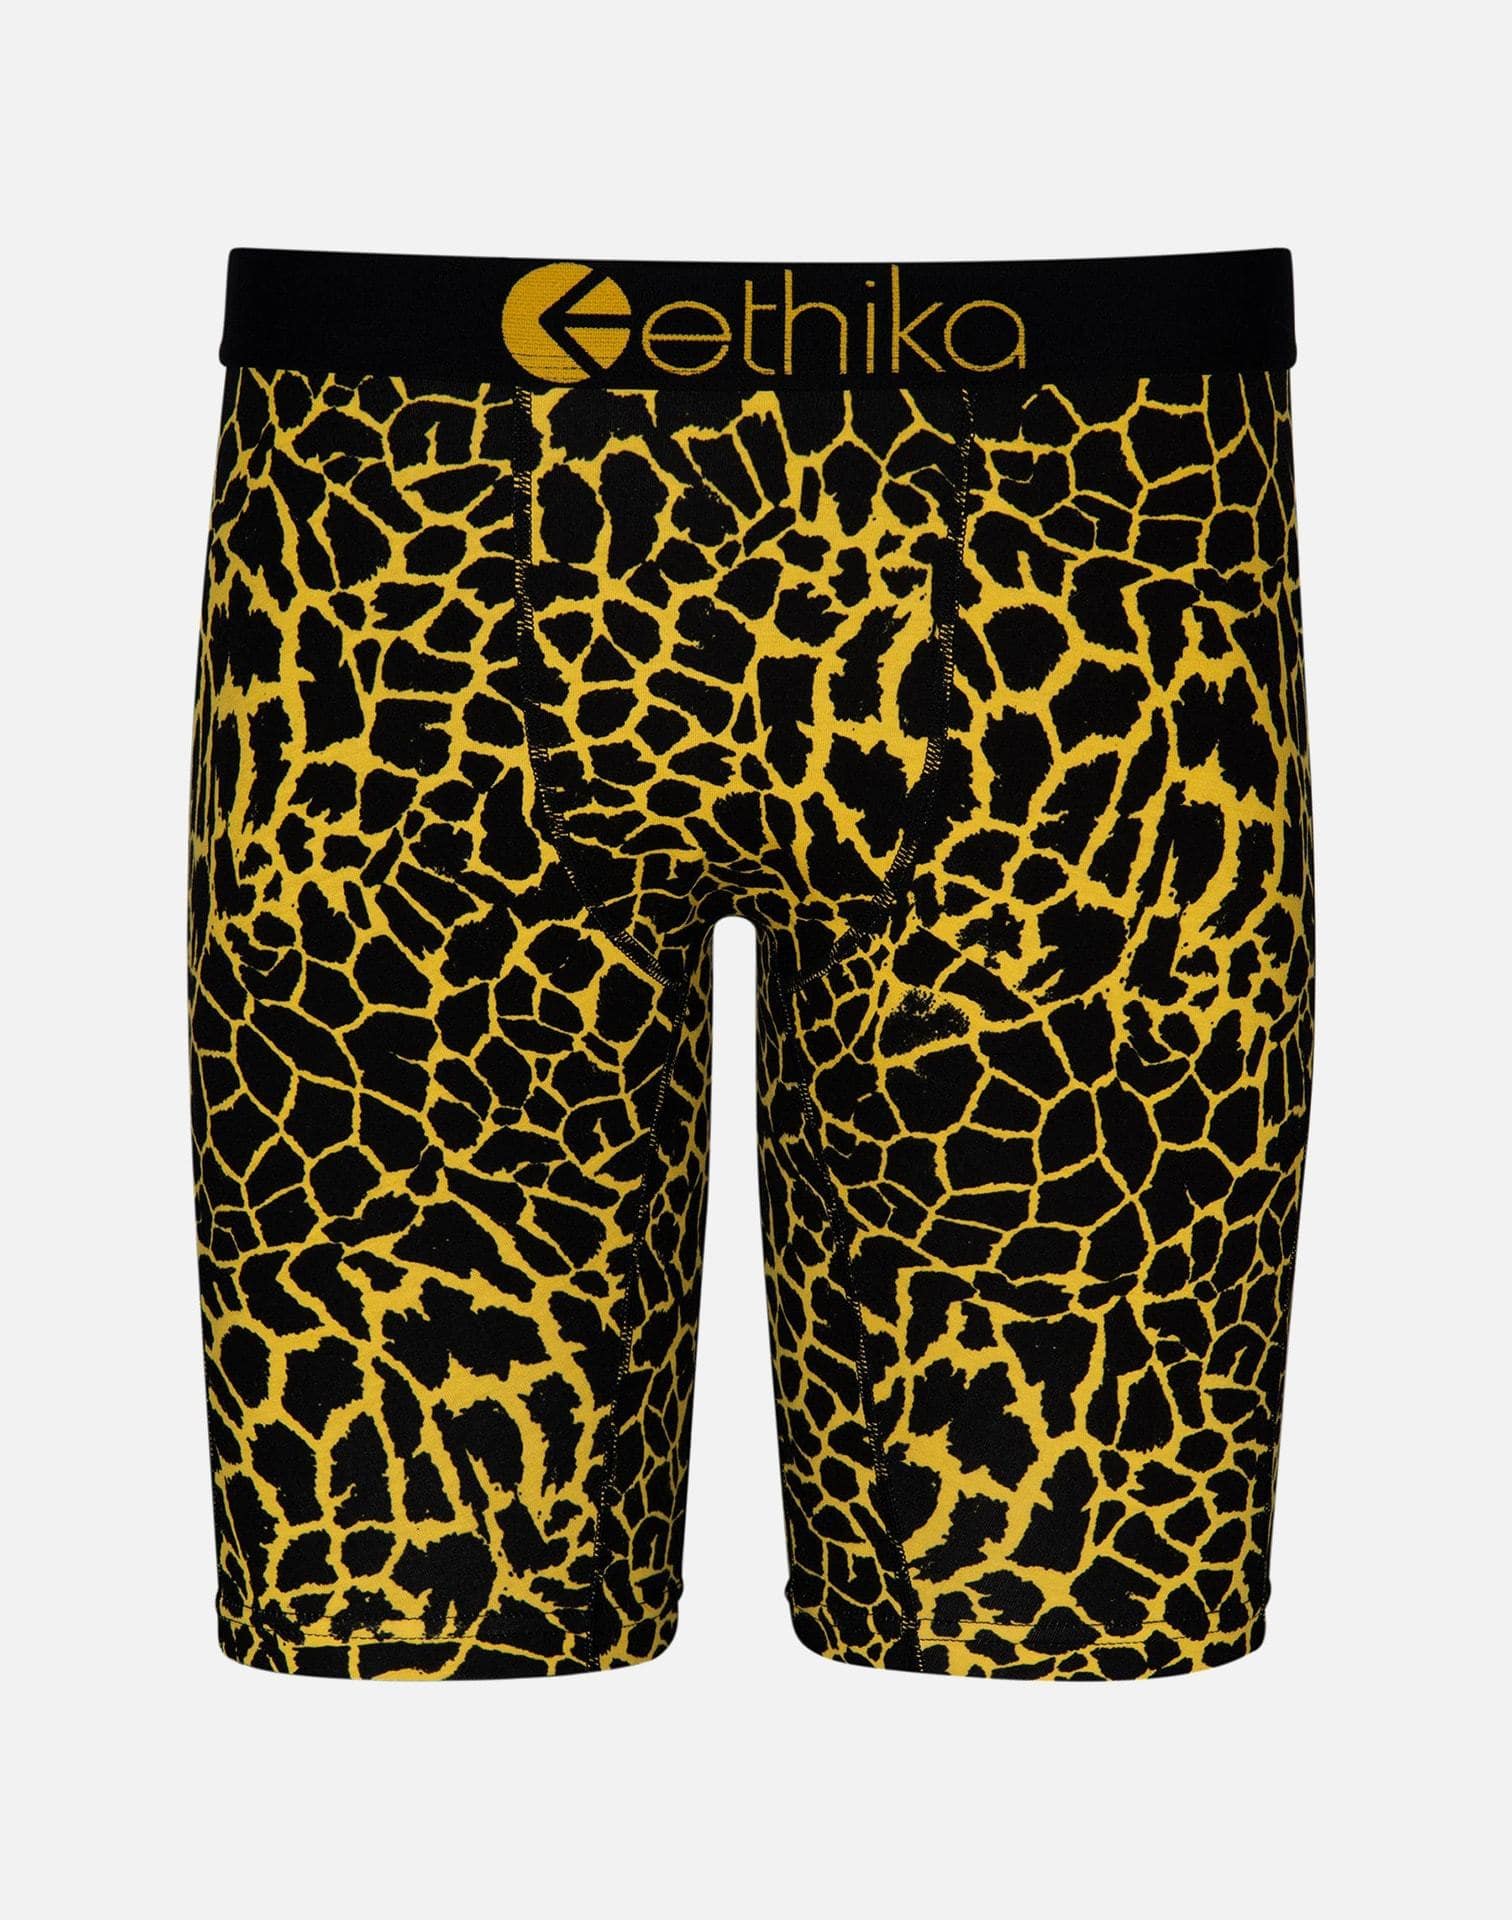 Ethika Men's Giraffe Boxer Briefs